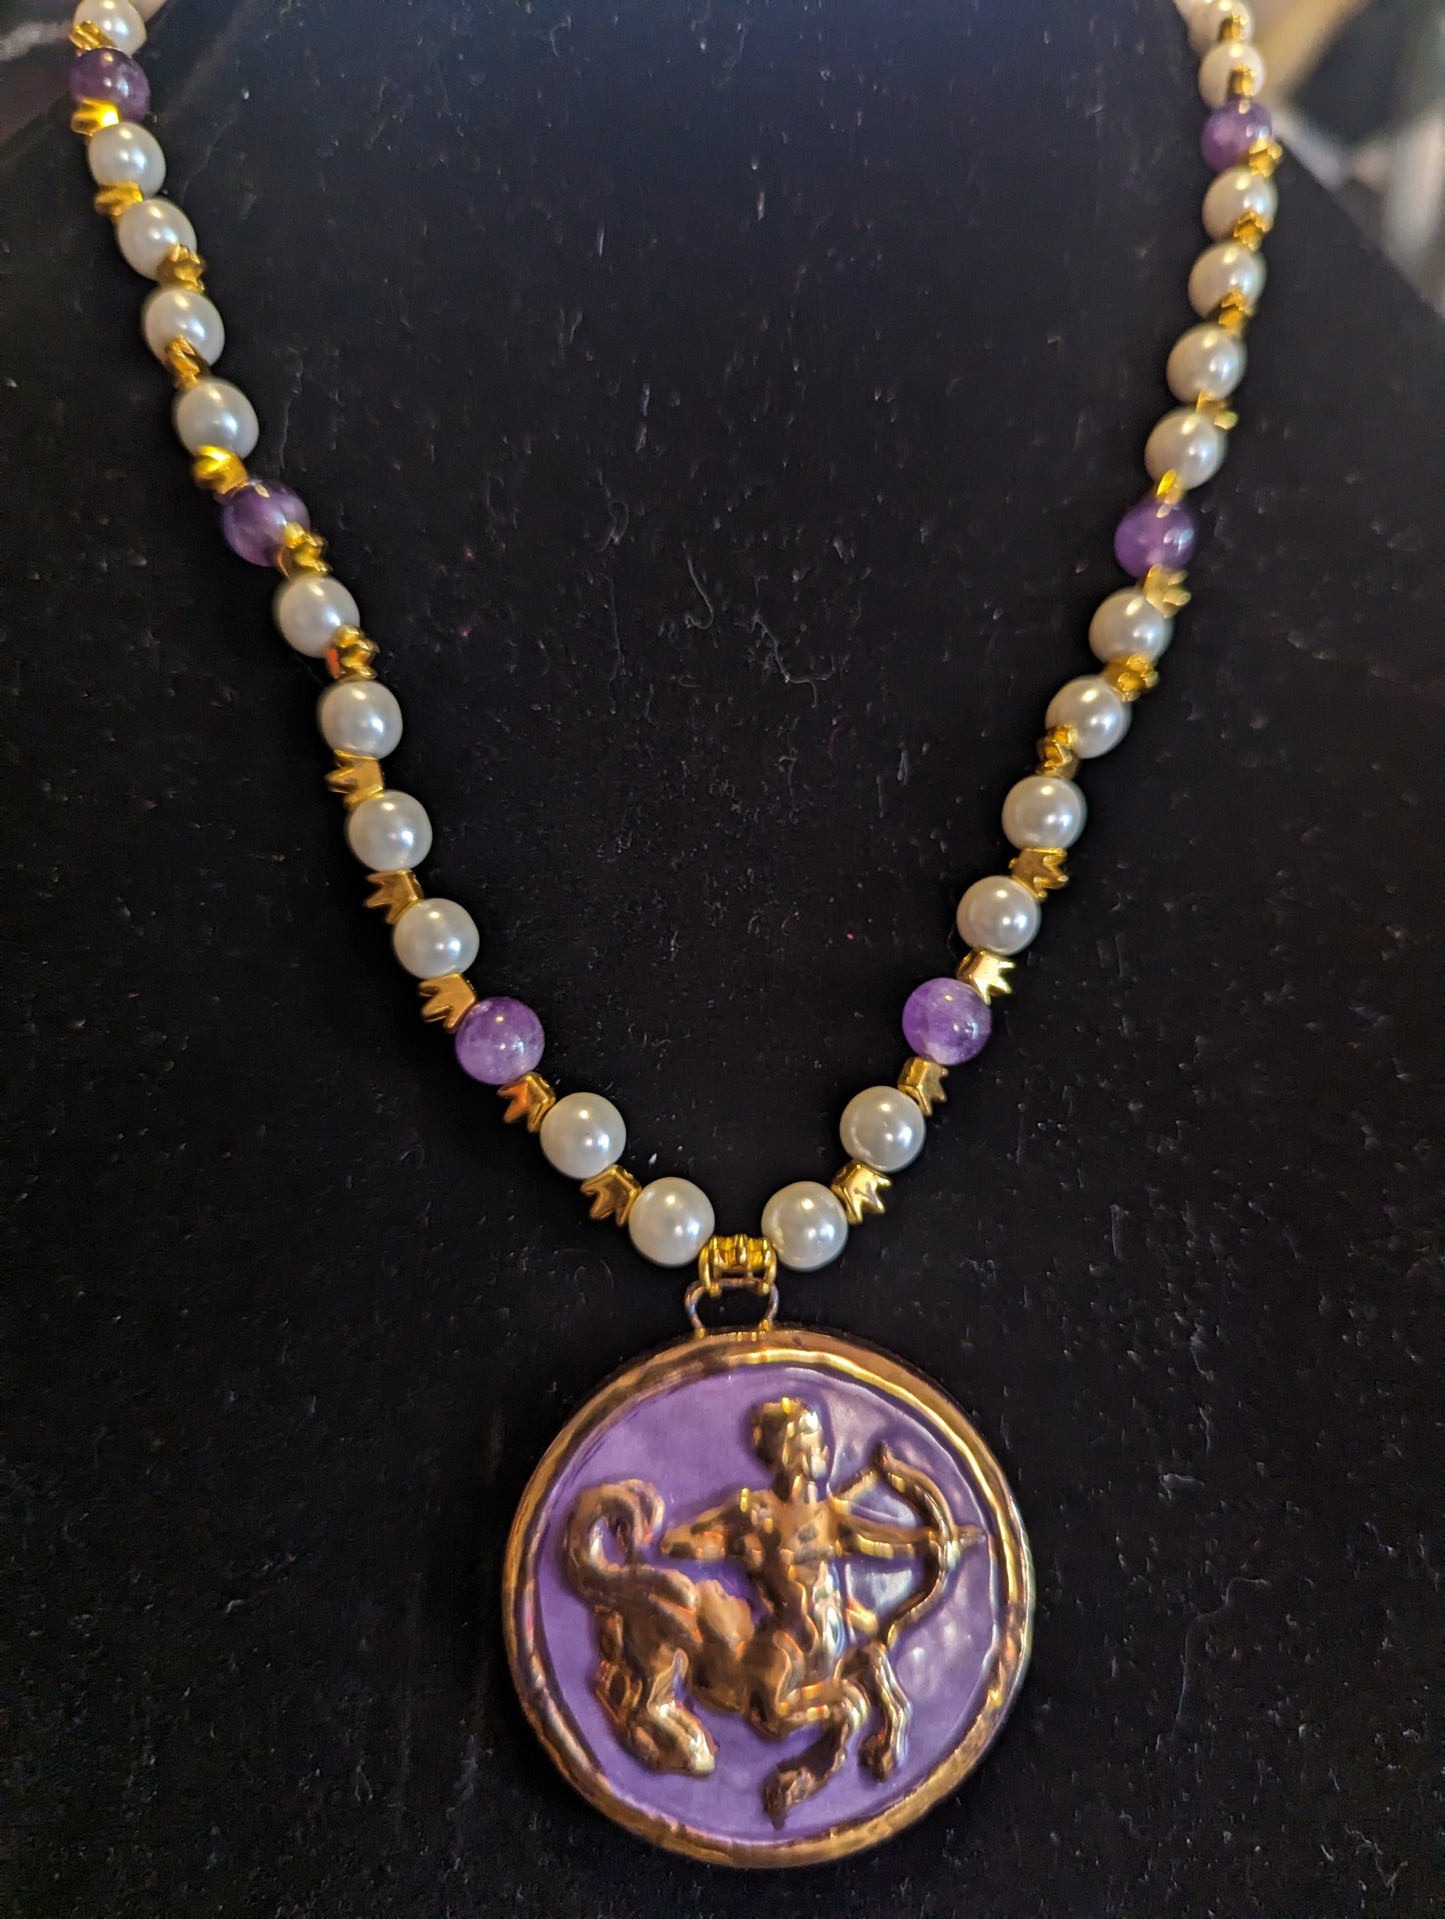 Sagittarius pendant necklace